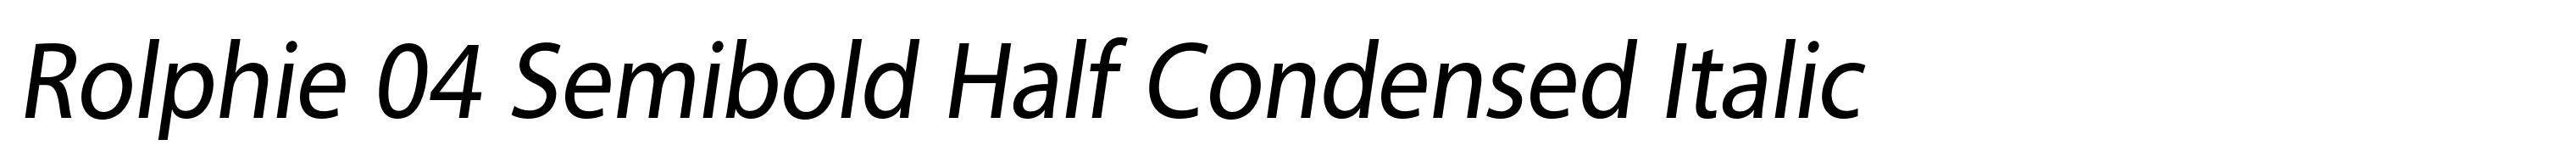 Rolphie 04 Semibold Half Condensed Italic